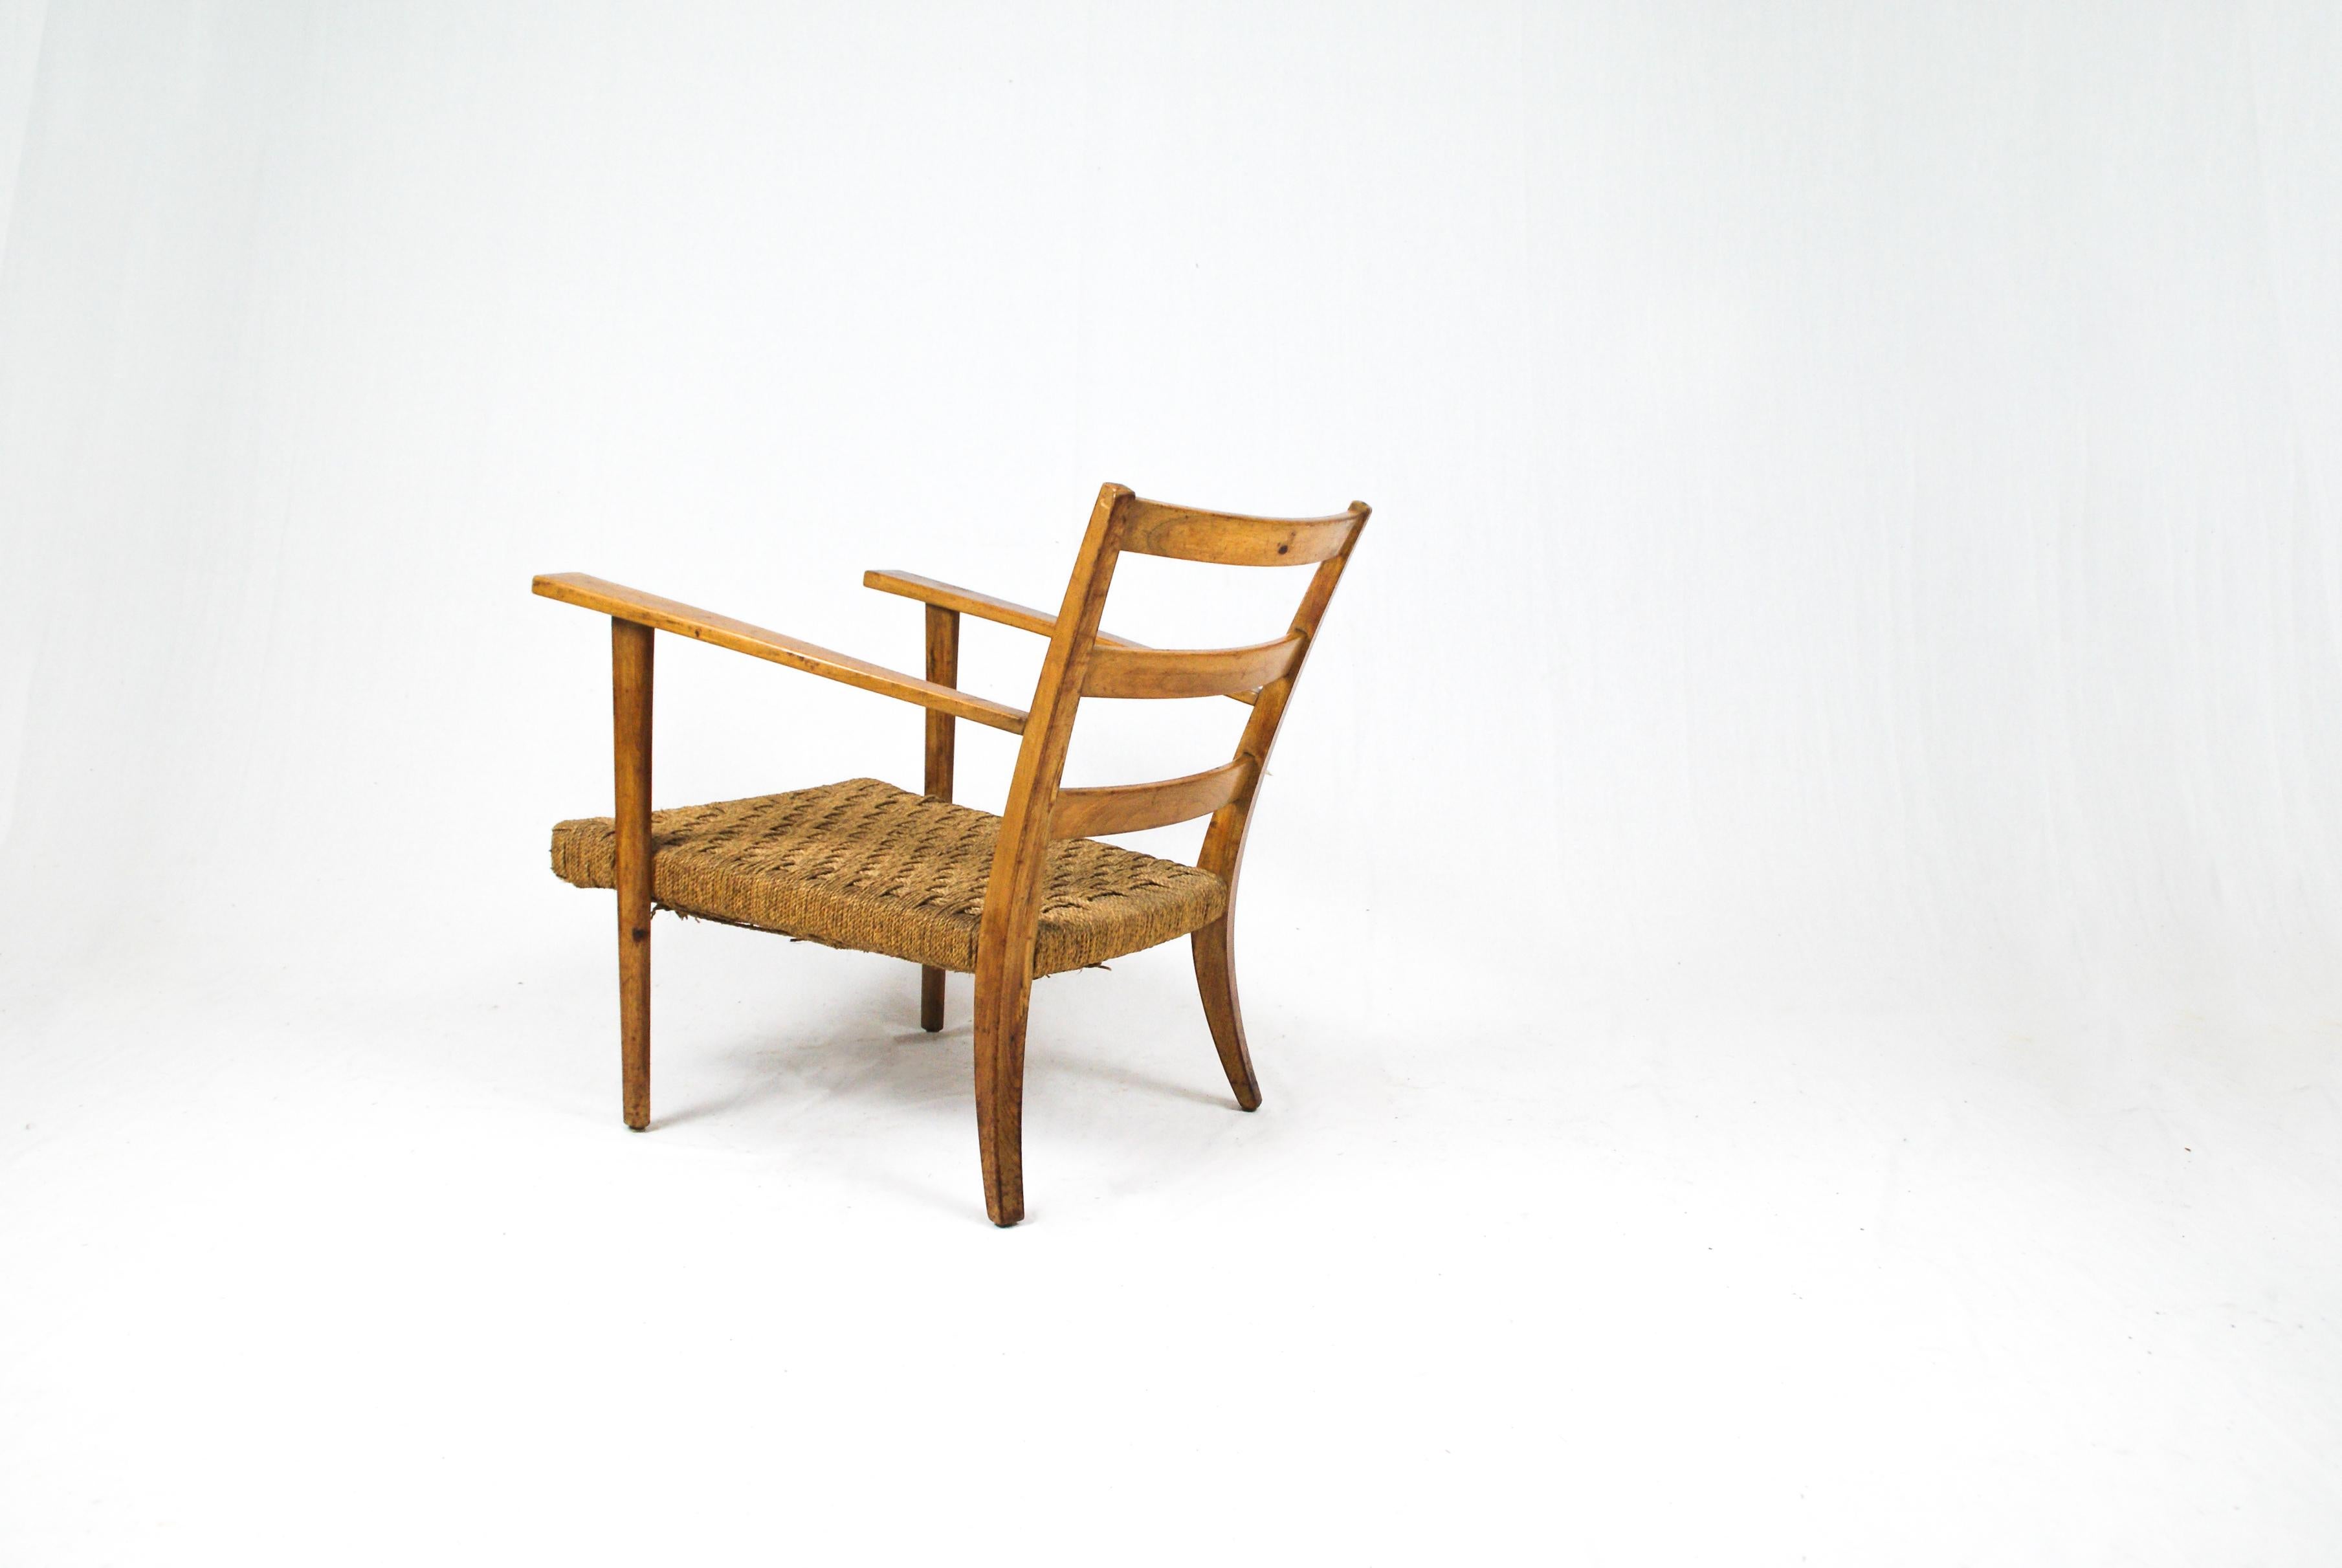 Italienischer Sessel aus den 1950er Jahren im Stil und in der Formgebung von Gio Ponti.

Elegantes Gestell mit geschwungenen Hinterbeinen, die die Rückenlehne begleiten, die sich zu einer bequemen und gemütlichen Sitzfläche ausdehnt. 

Die